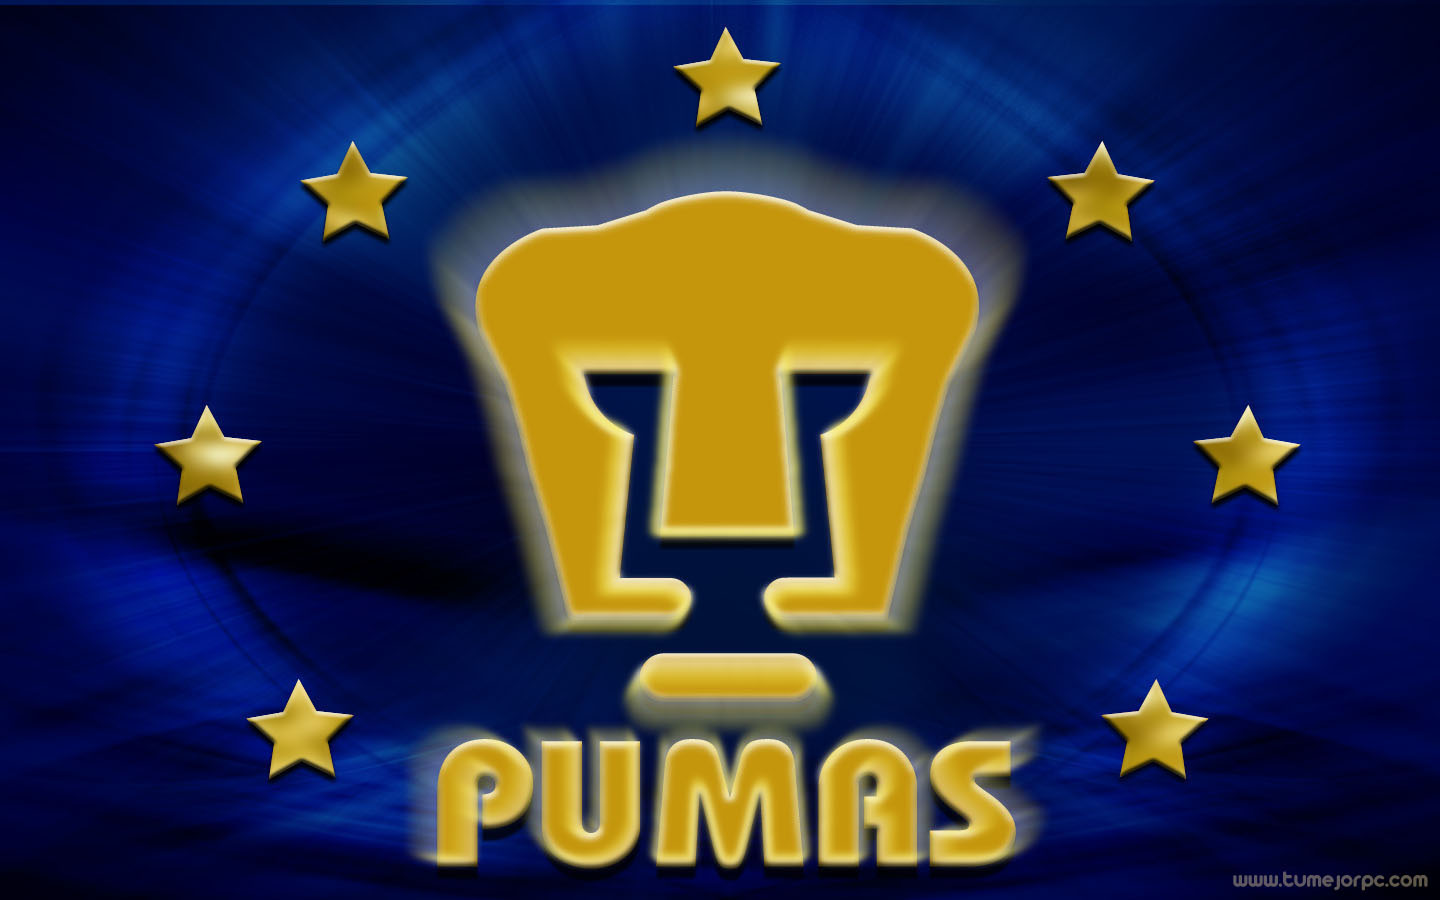 Pumas Unam Wallpapers